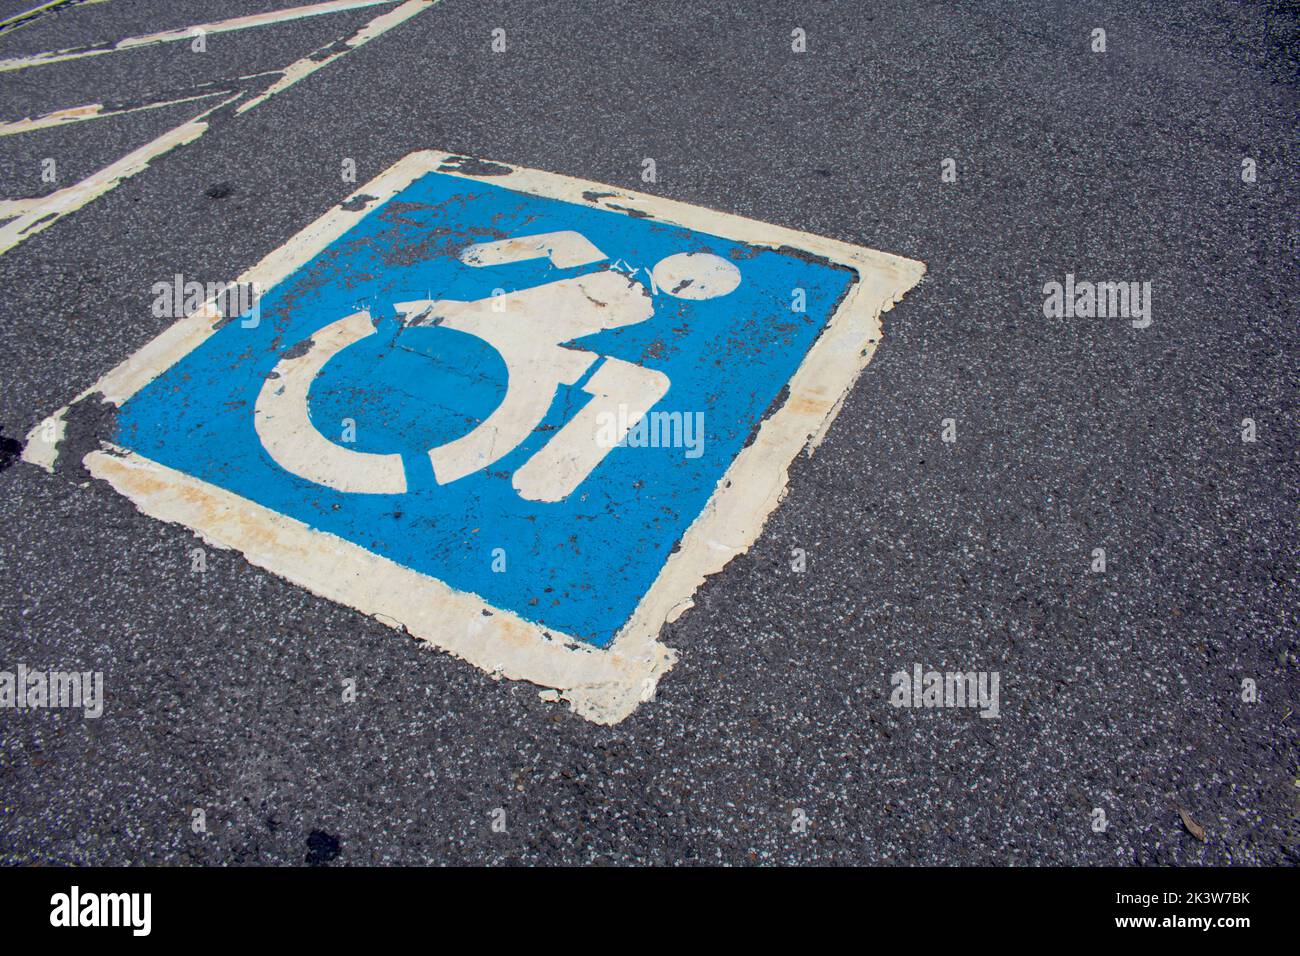 estacionamiento para discapacitados marcado en azul y blanco Foto de stock